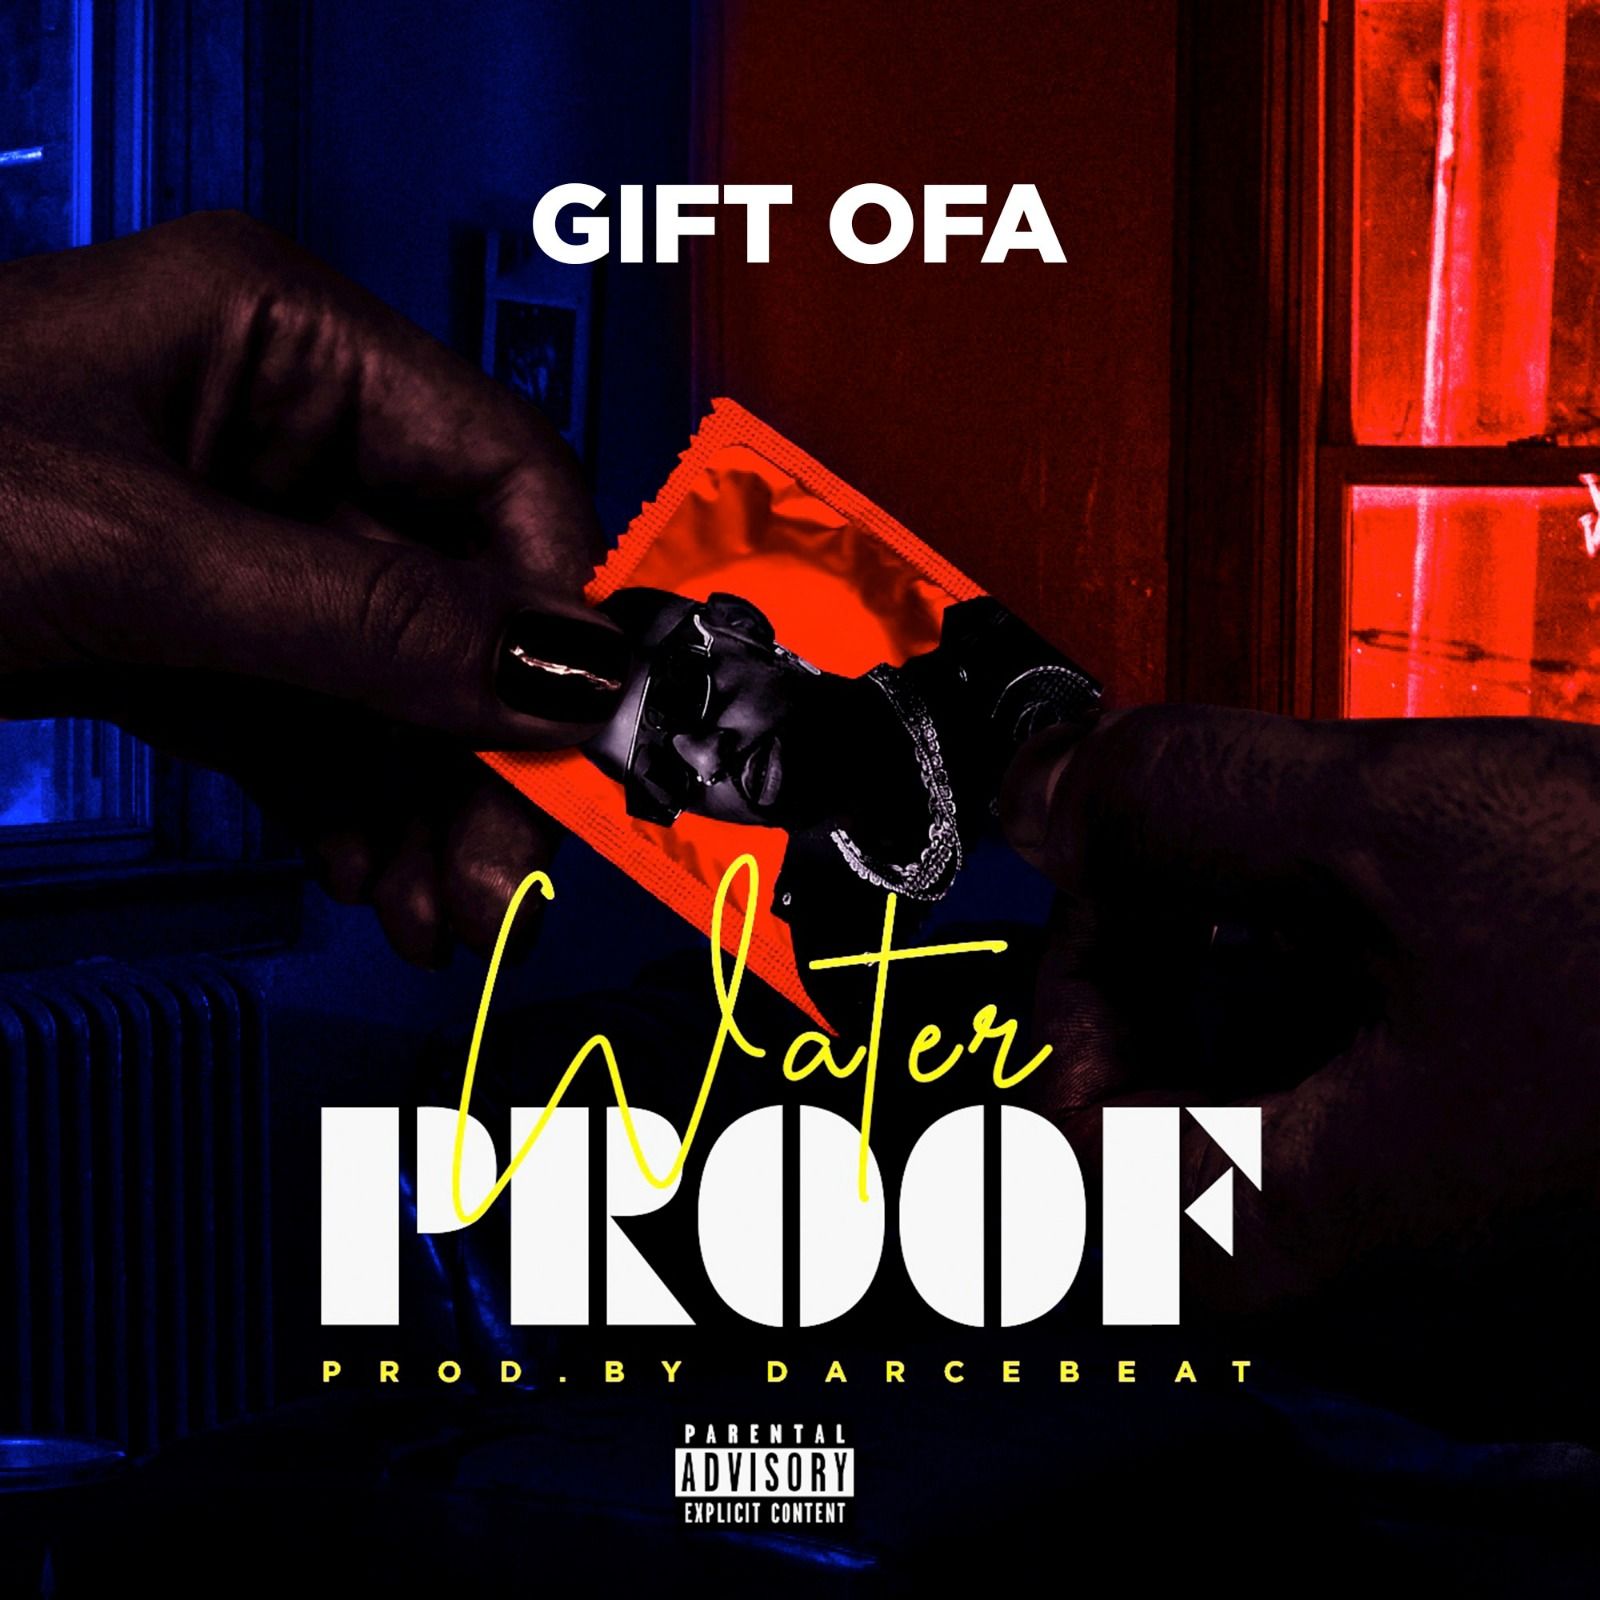 Gift OFA - Waterproof